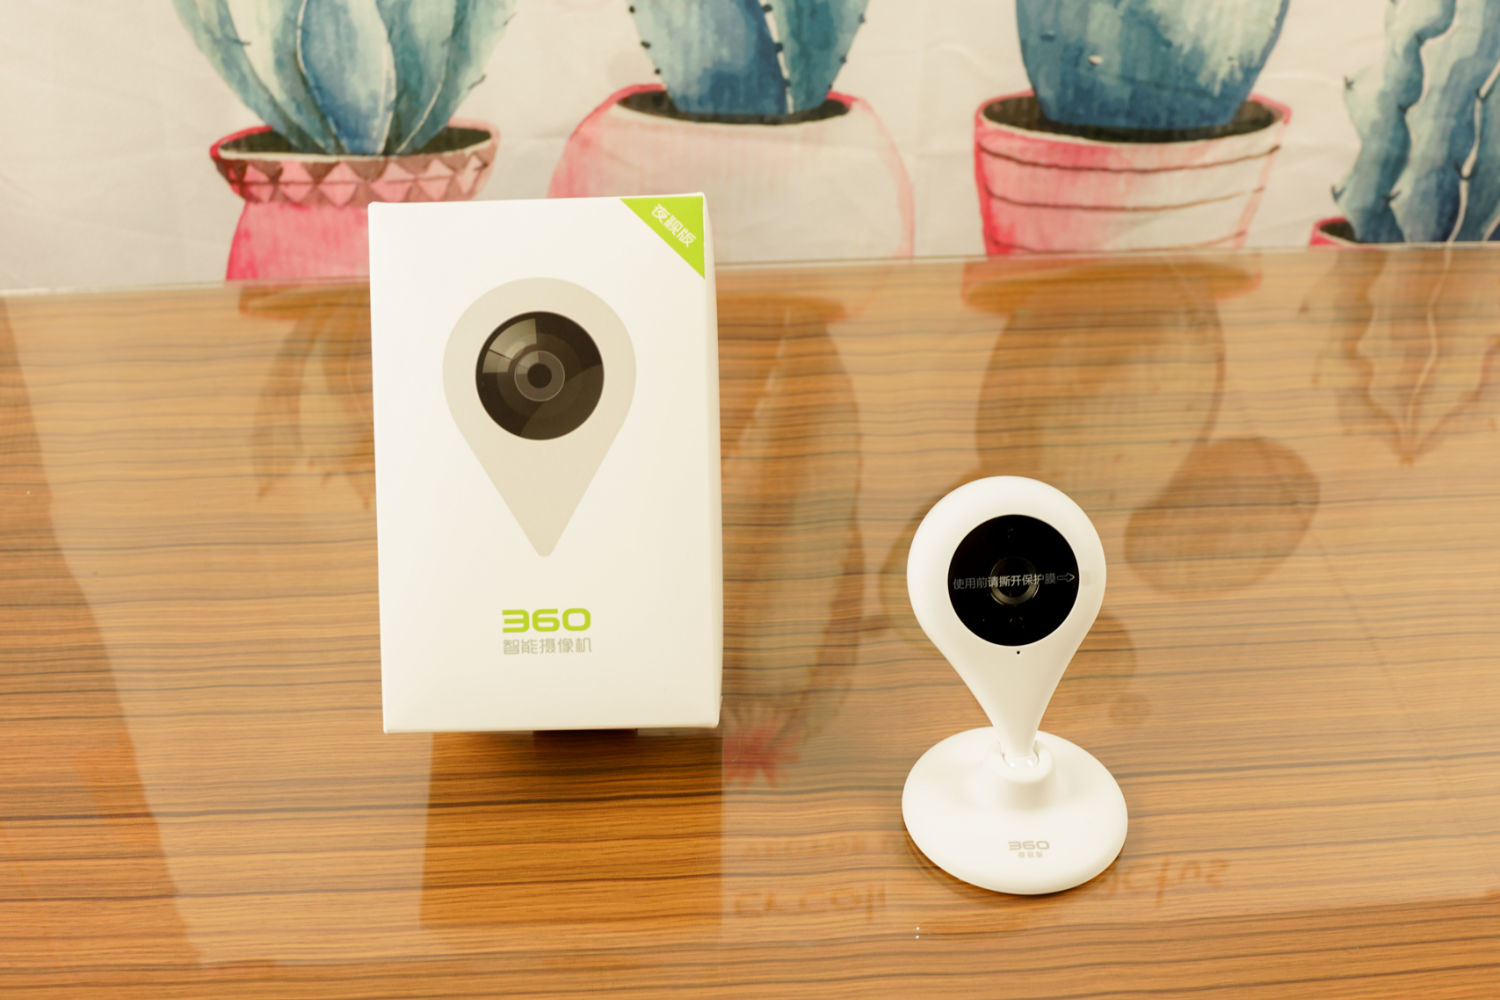 360智能摄像机:夜视版试用分享